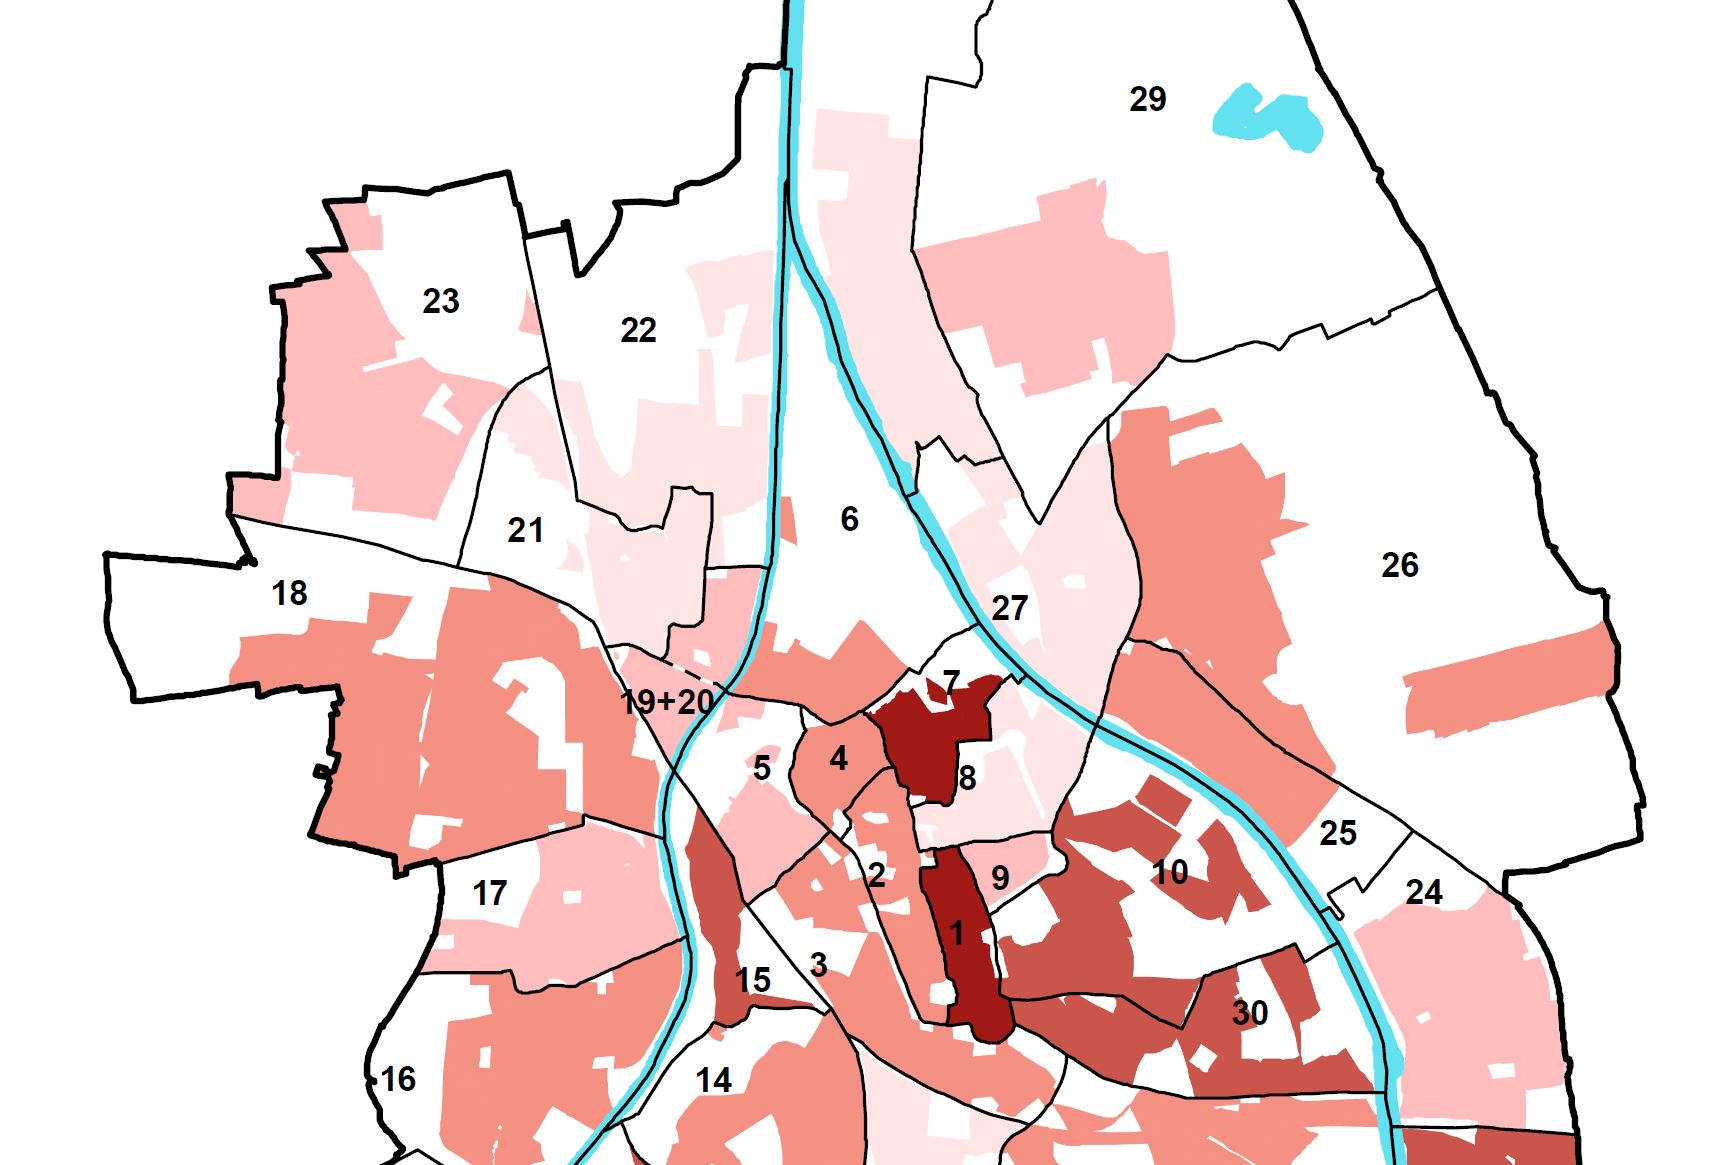 Ausschnitt aus einem Stadtplan der Stadt Augsburg. Die Stadtteile sind unterschiedlich eingefärbt. Die Farben stehen für unterschiedliche Ausprägungen der Corona-Pandemie. 